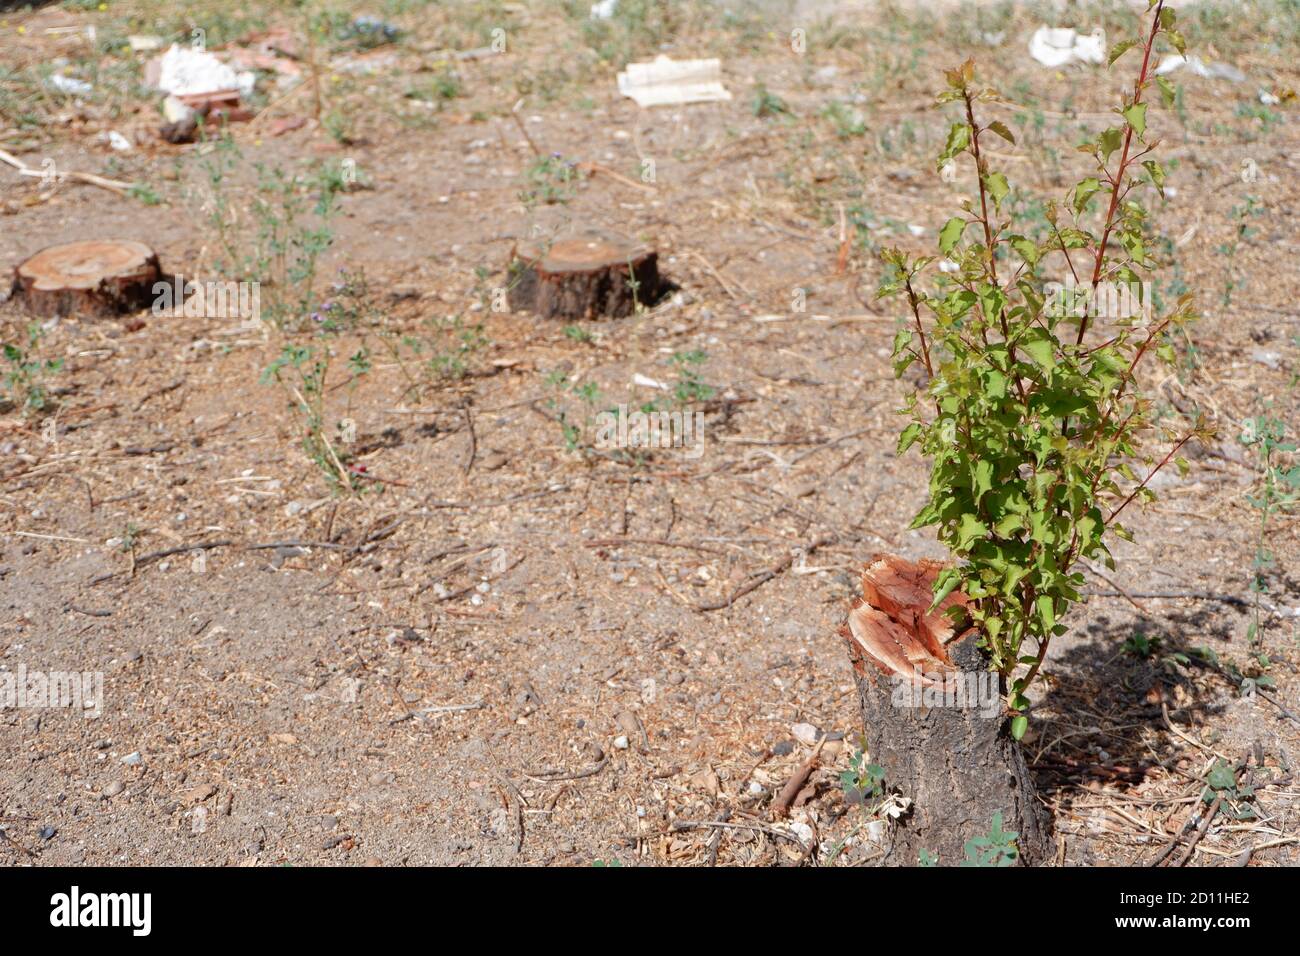 Sobrevivir: El árbol florece de nuevo después de ser cortado Foto de stock